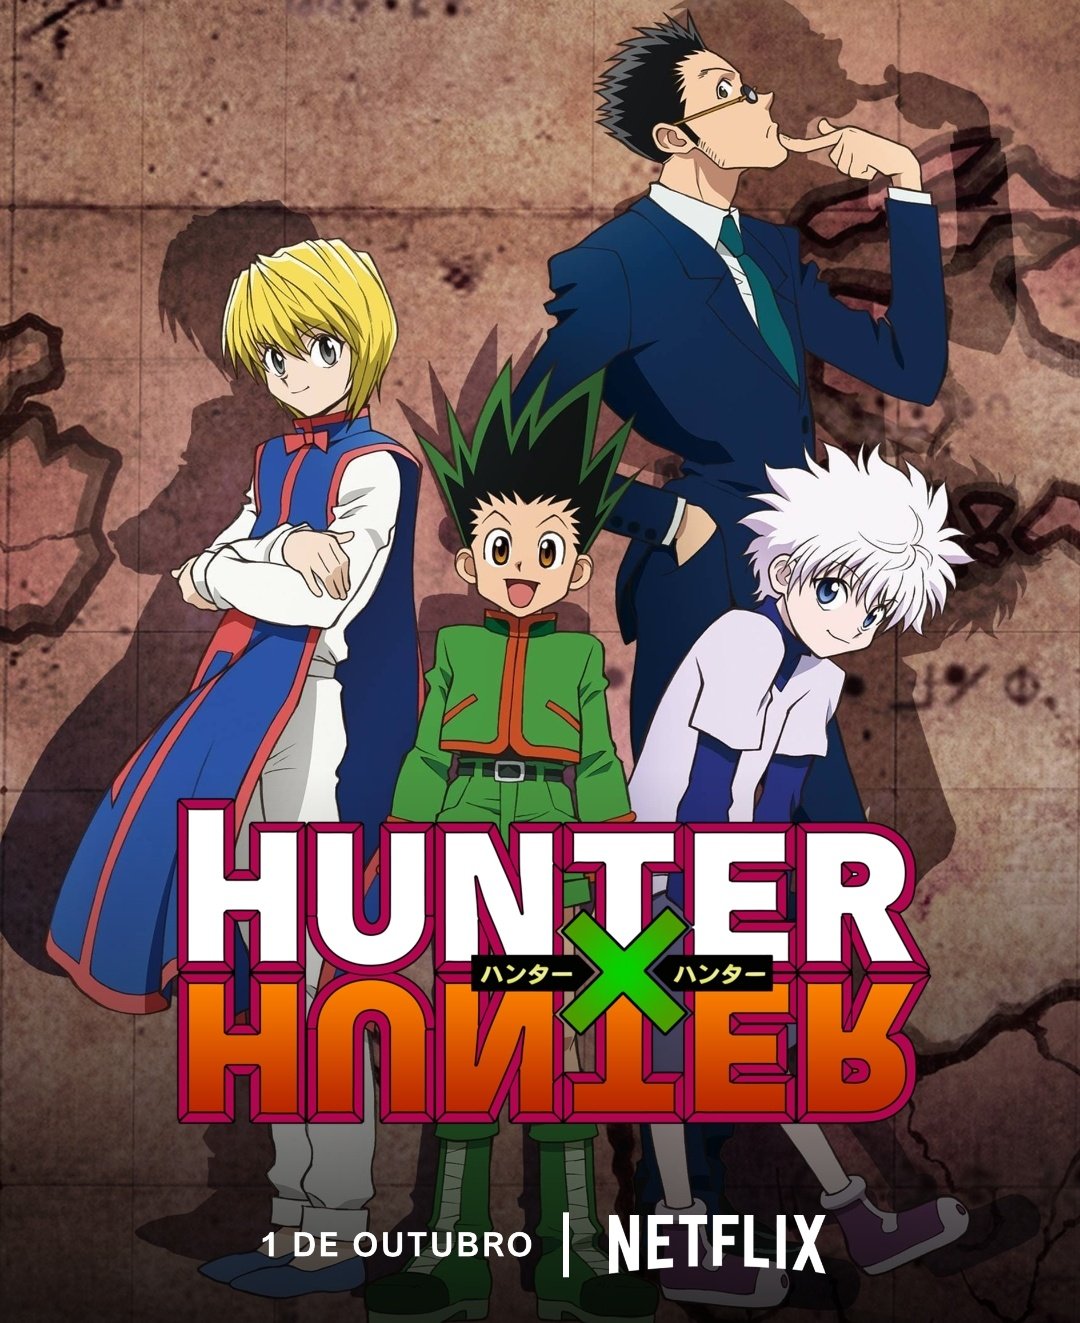 Portal Netflix BR  Fan Account on X: O anime Hunter x Hunter (2011)  retornará ao catálogo da @NetflixBrasil futuramente. Os episódios começaram  a receber dublagem em português na Netflix dos Estados